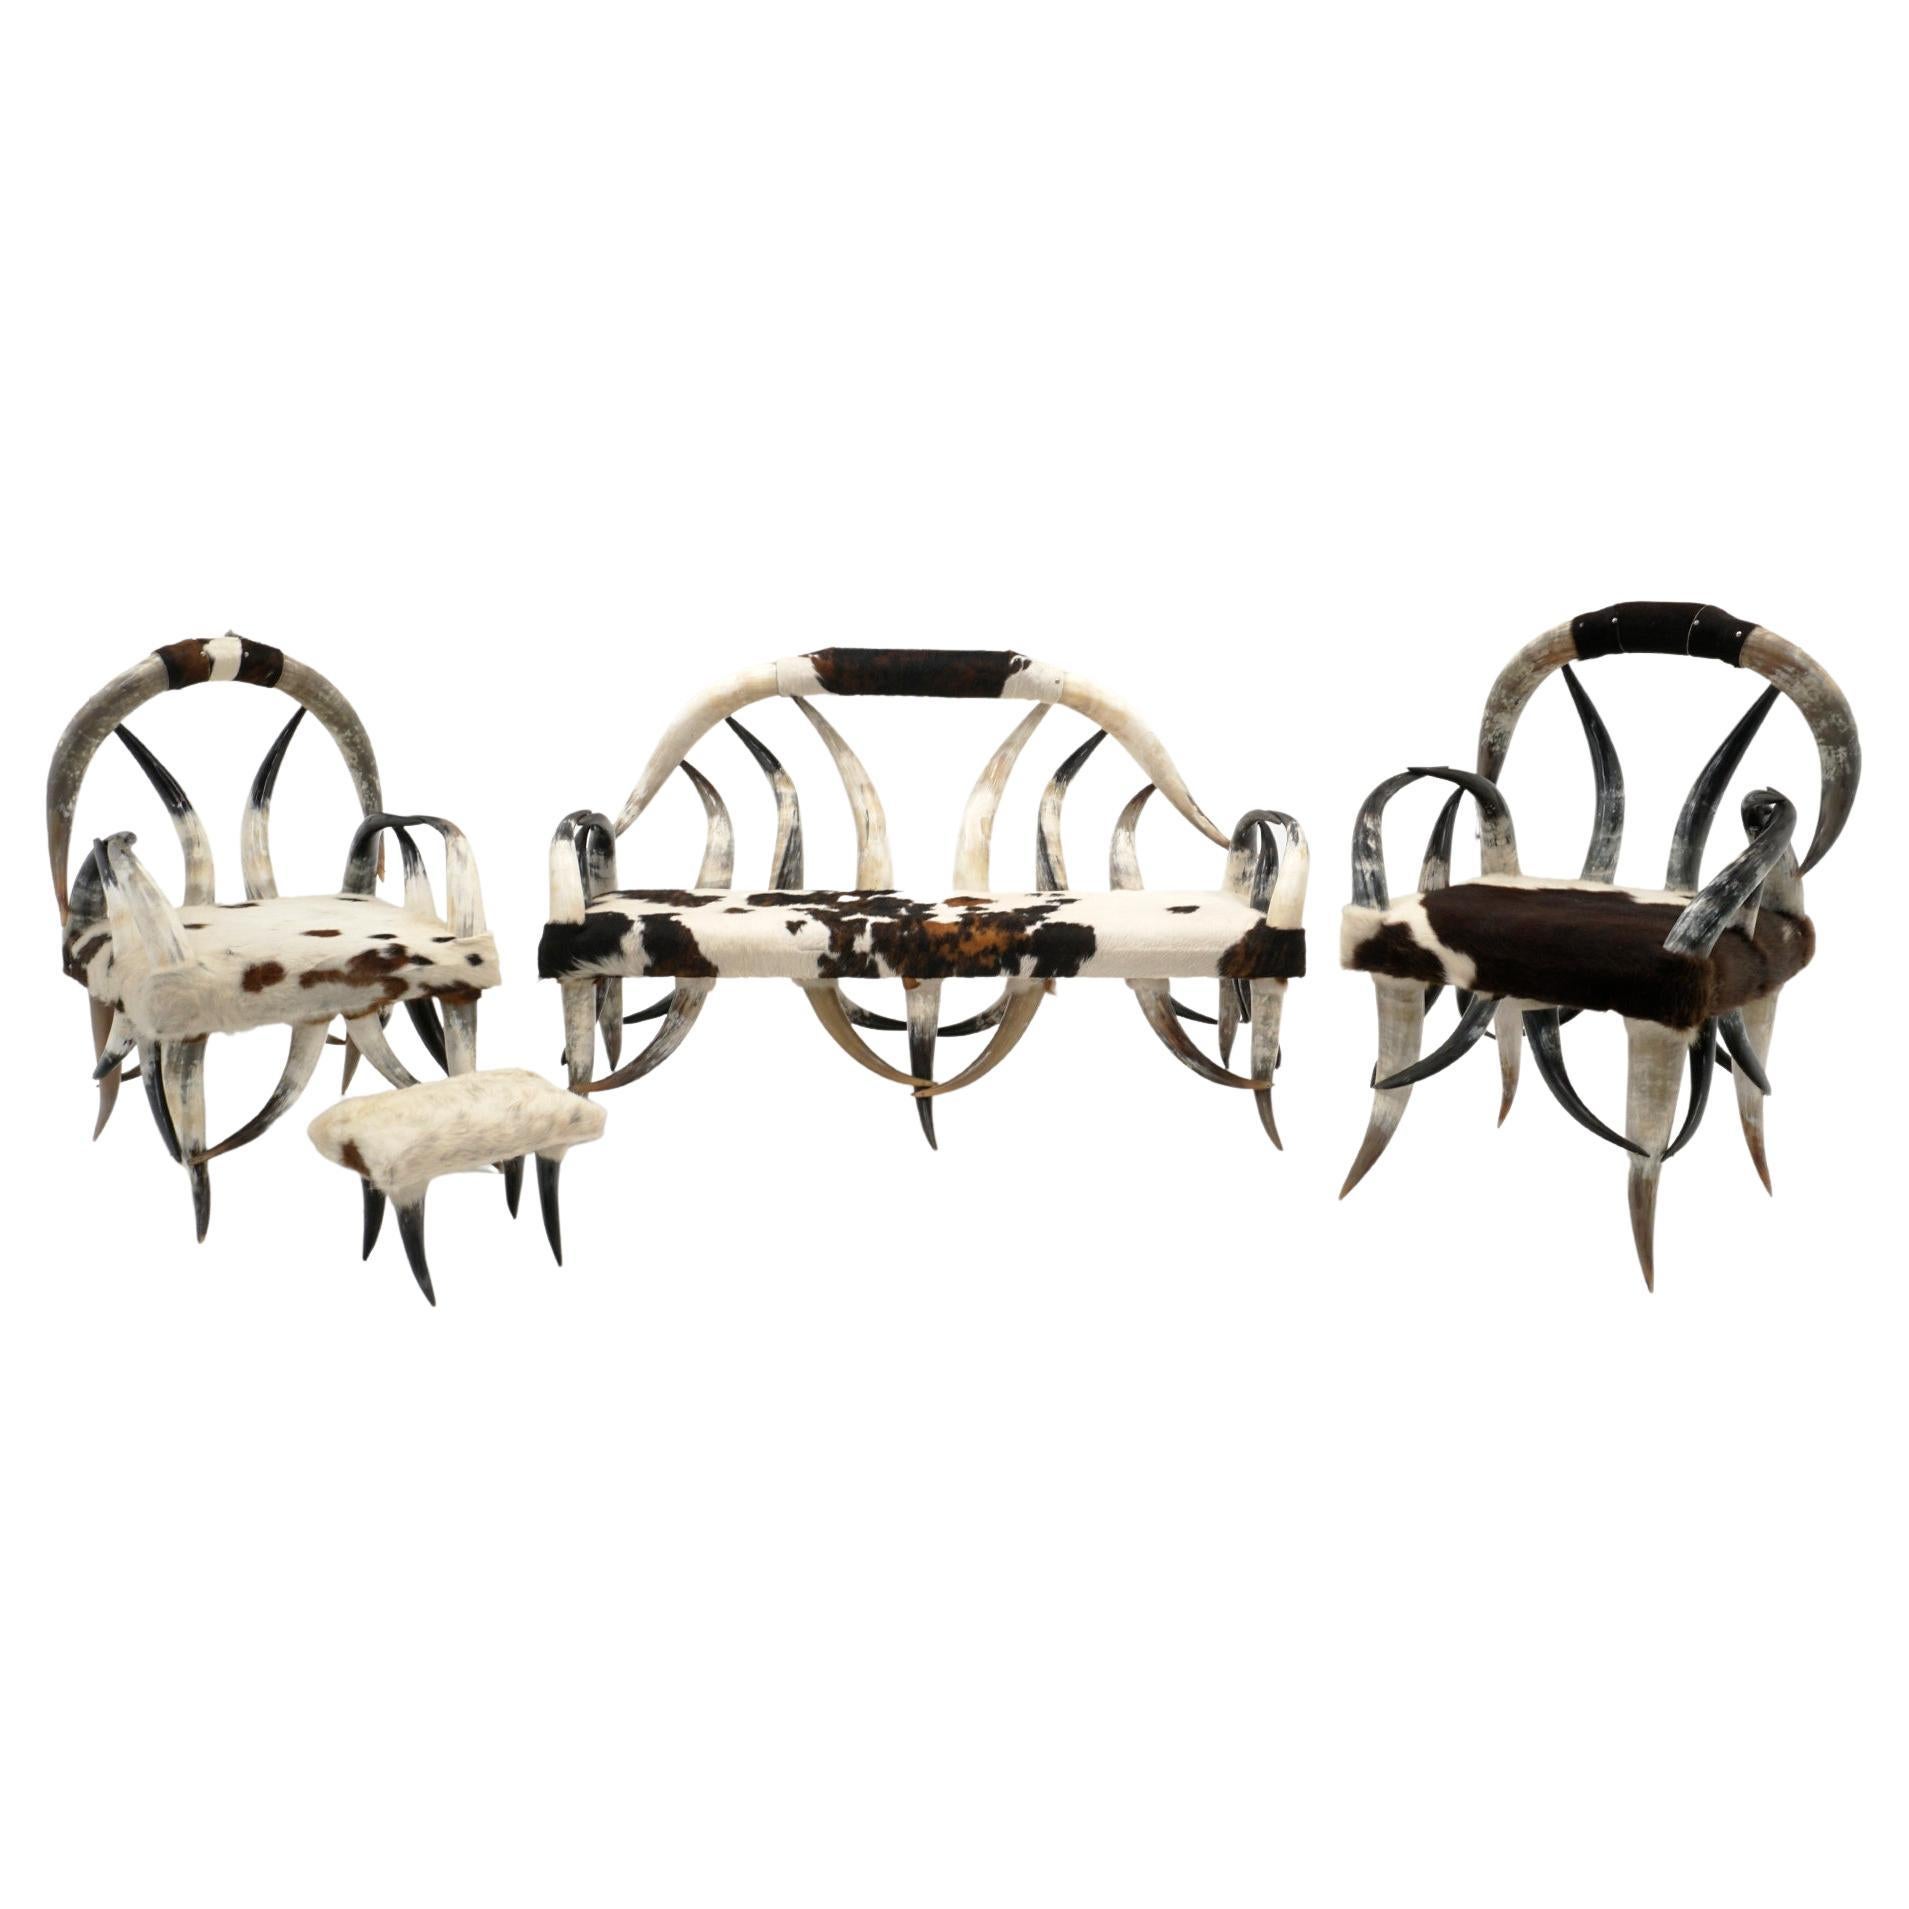 Steer Horn Sofa, zwei Stühle und Ottomane, schwarz, braun und weiß gepolstertes Rindsleder 